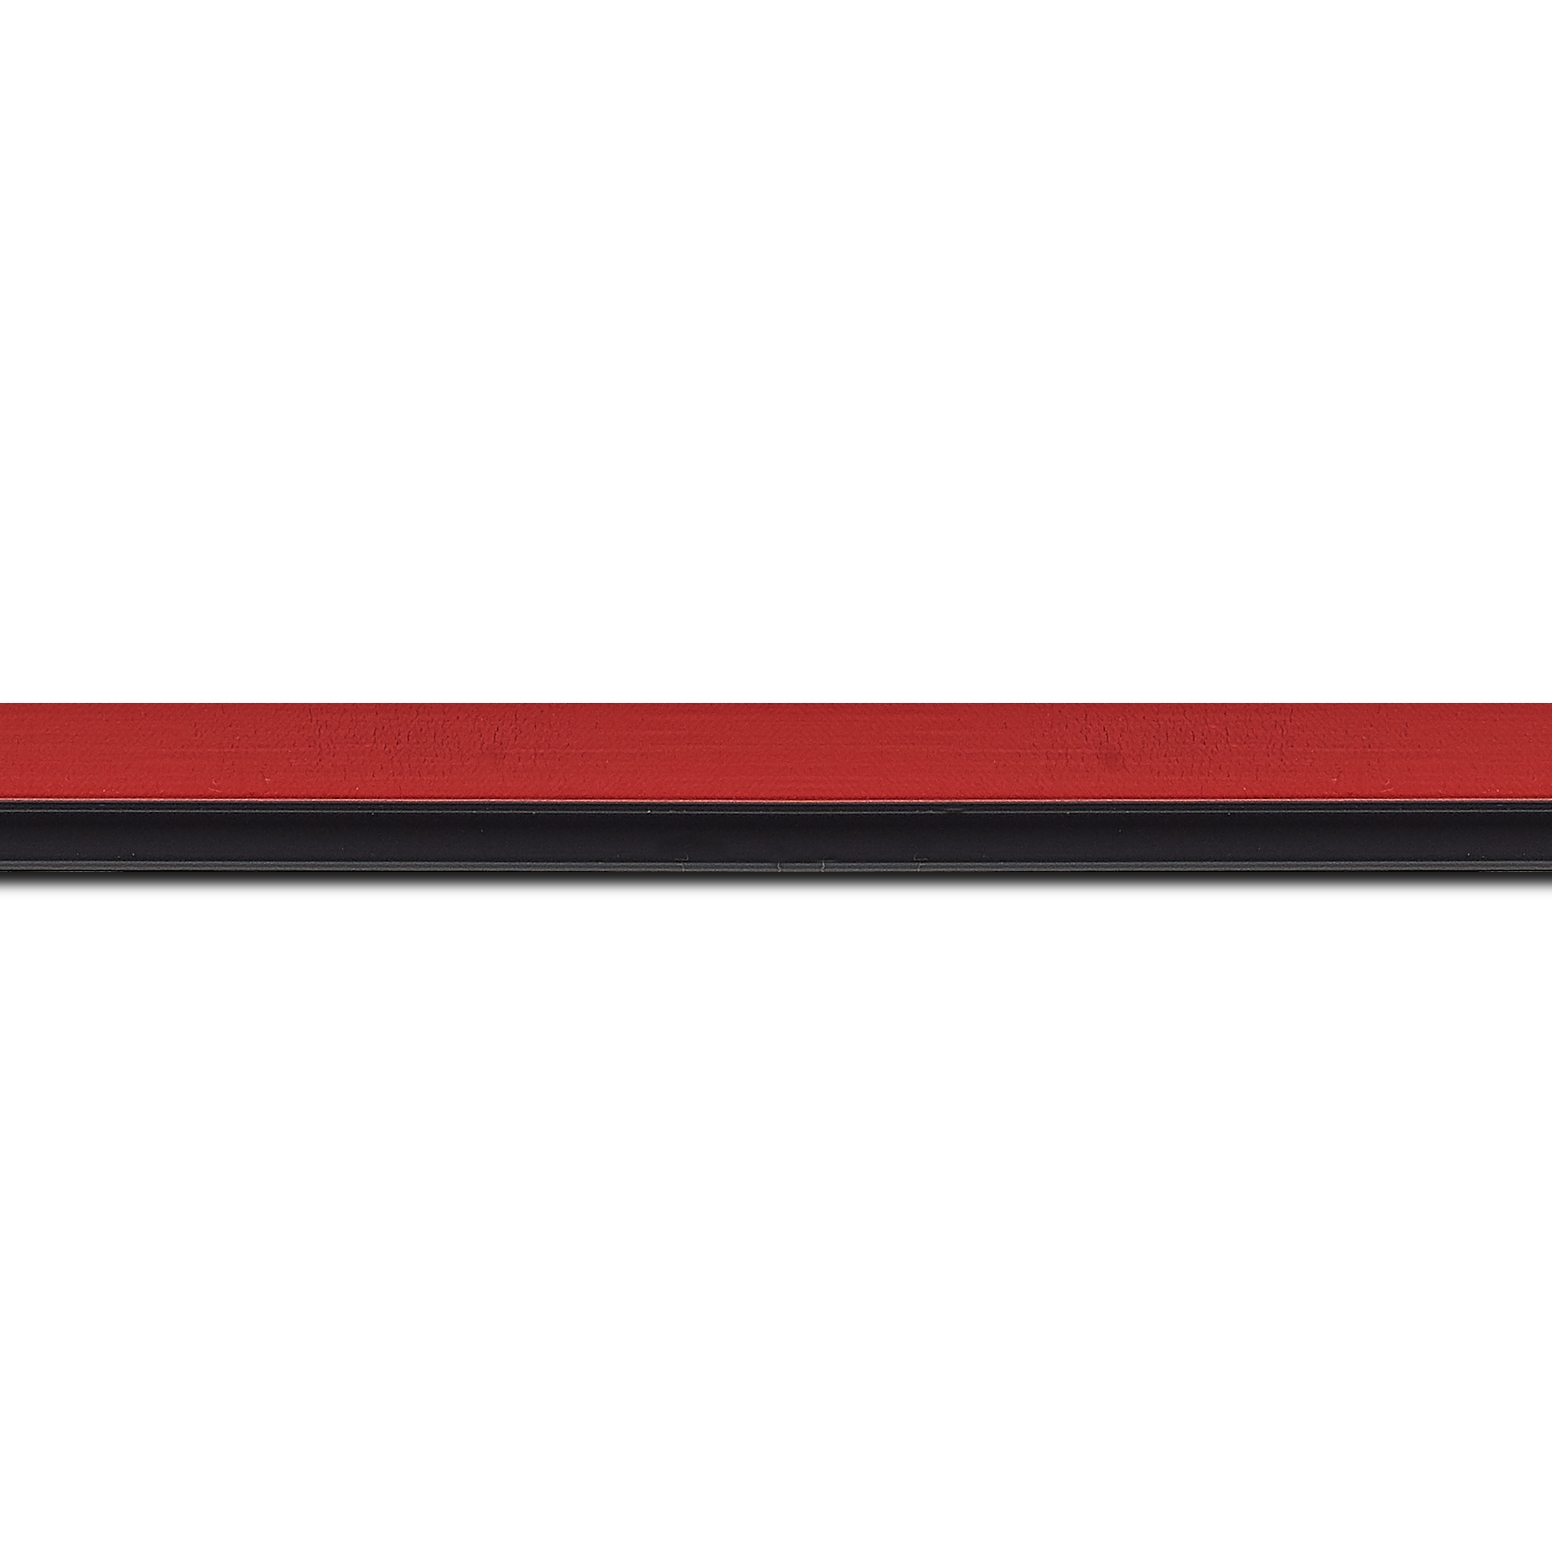 Baguette longueur 1.40m bois profil plat largeur 1.6cm couleur rouge satiné filet noir en retrait de la face du cadre de 6mm assurant un effet très original